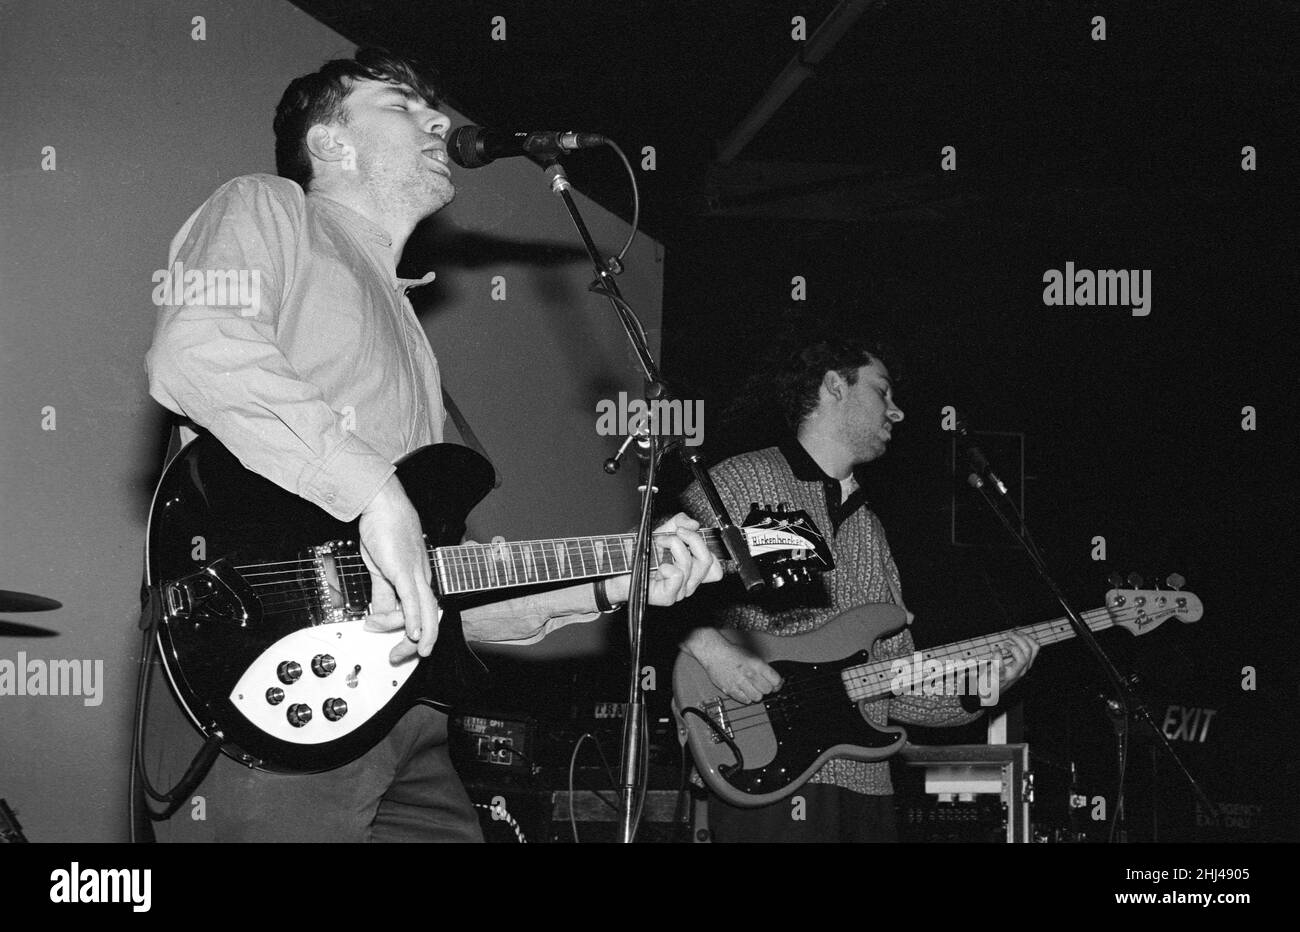 La banda de rock alternativo Last Party, actuando en el Bowen West Theatre, Bedford, Inglaterra, marzo de 3rd 1990. Foto de stock